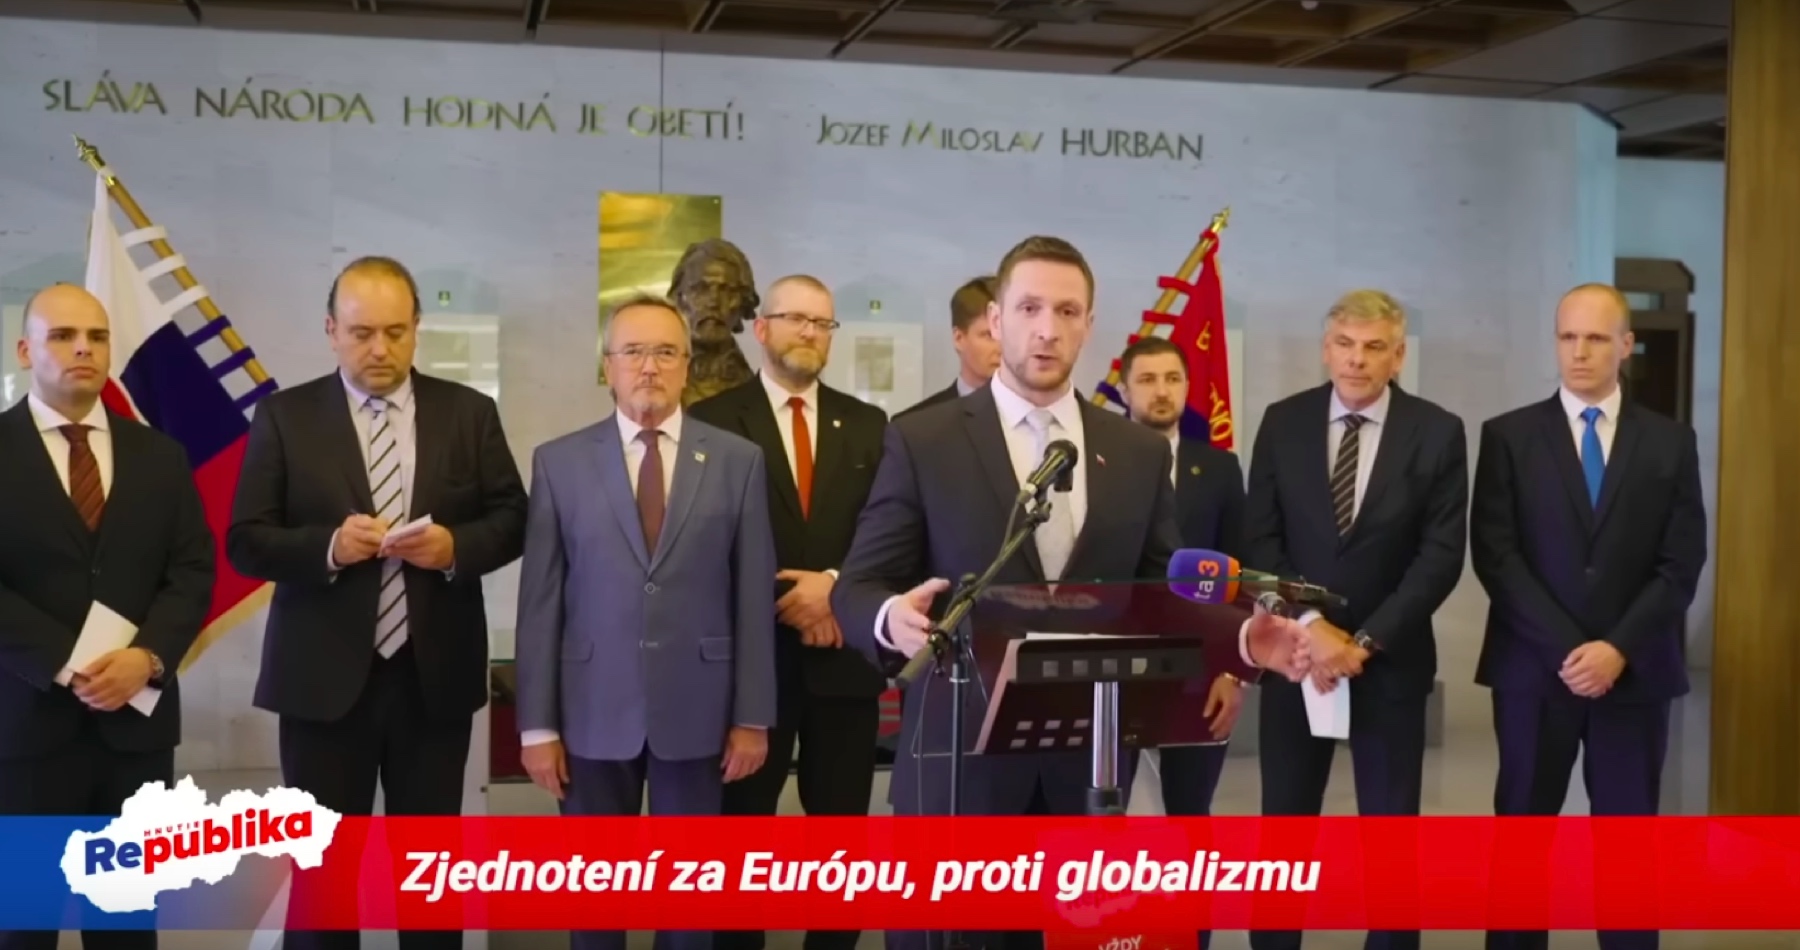 VIDEO: Medzinárodná deklarácia poslancov 7 štátov EÚ: Sme zjednotení za Európu, proti globalizmu! Odmietame súčasné smerovanie Európskej únie a progresívno-liberálnej ideológie, ktorá poškodzuje európsku civilizáciu a kultúru!